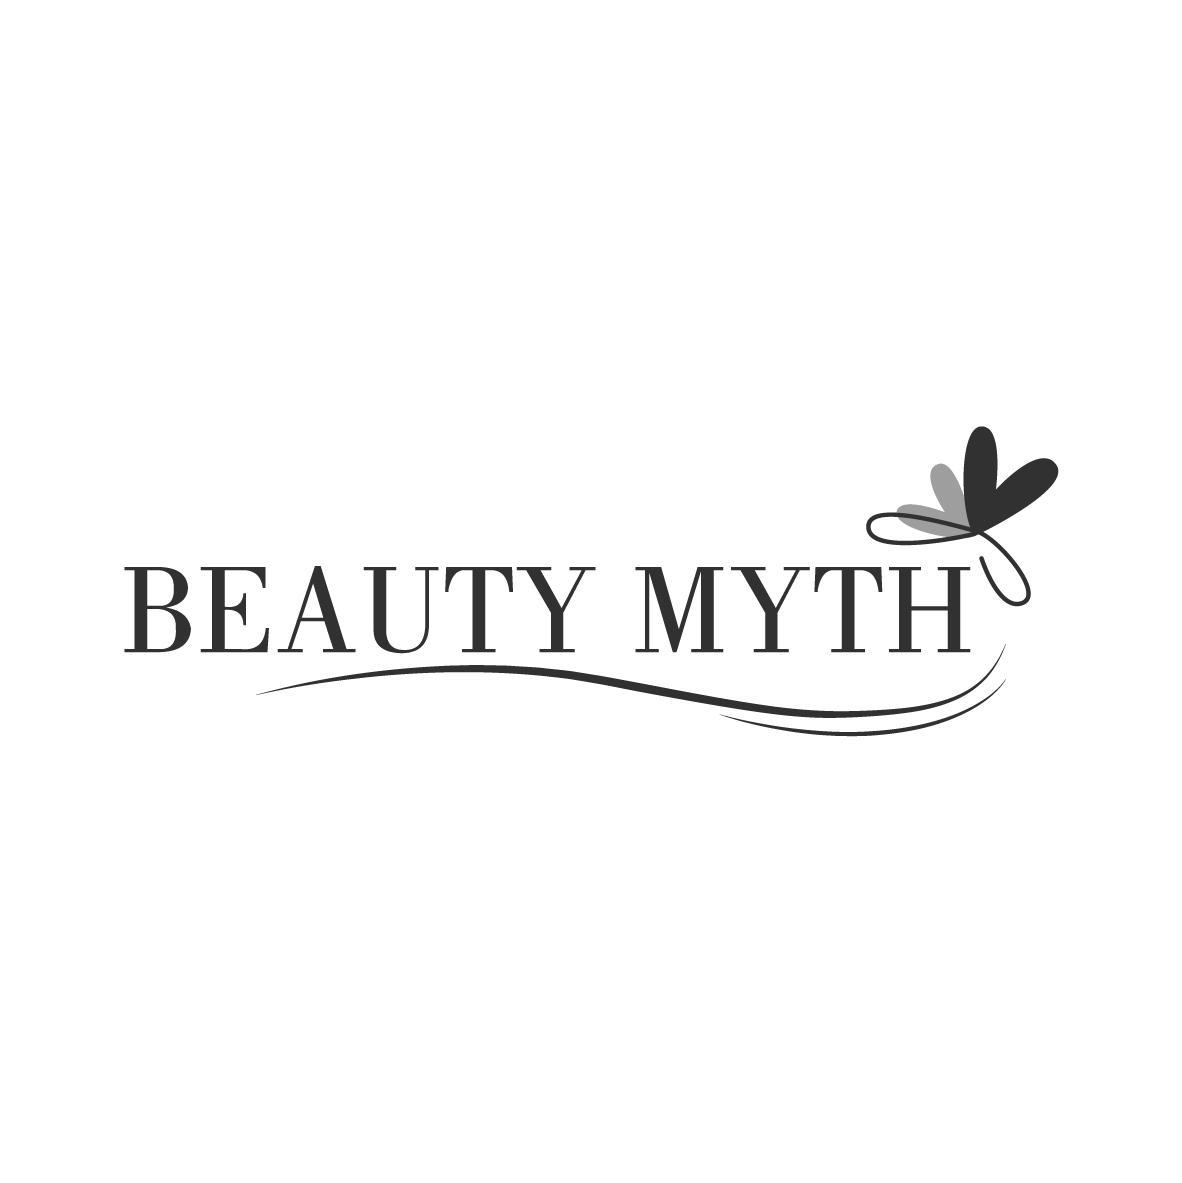 BEAUTY MYTH